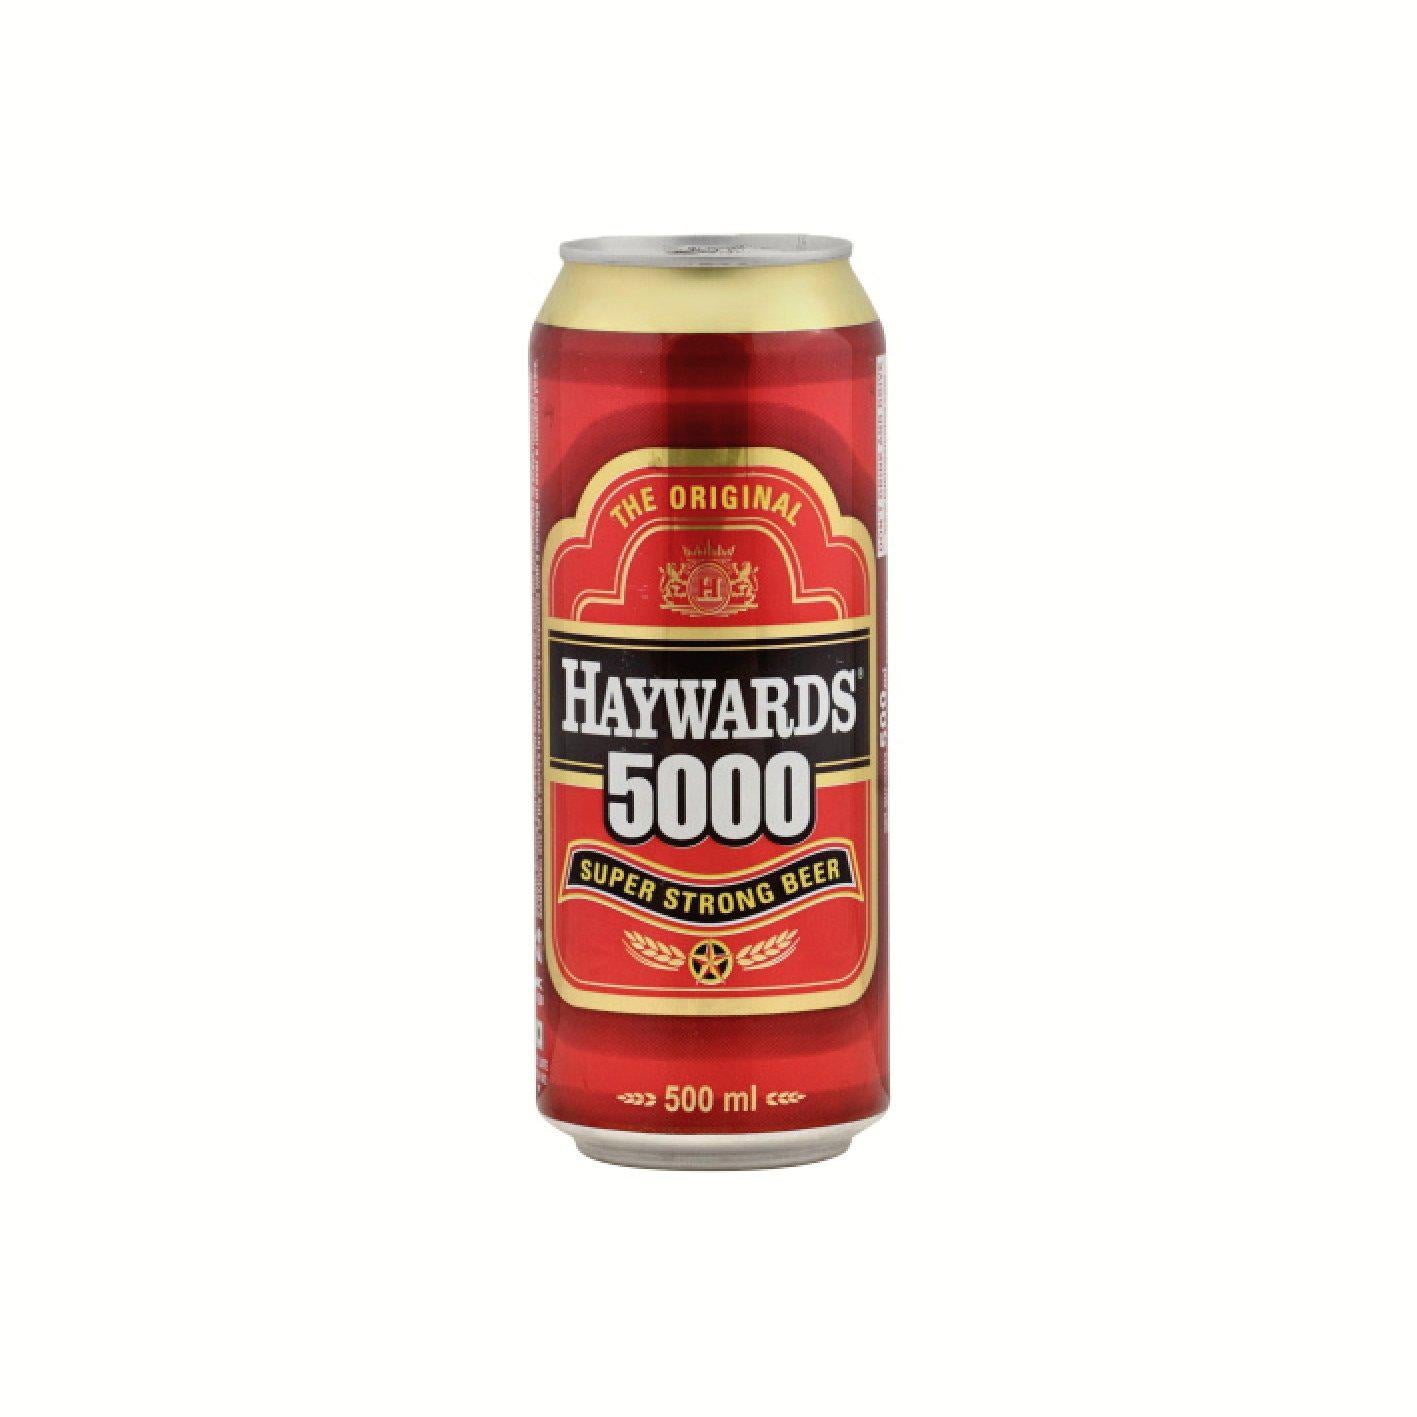 Haywards 5000 Indian Premium Beer 500ml